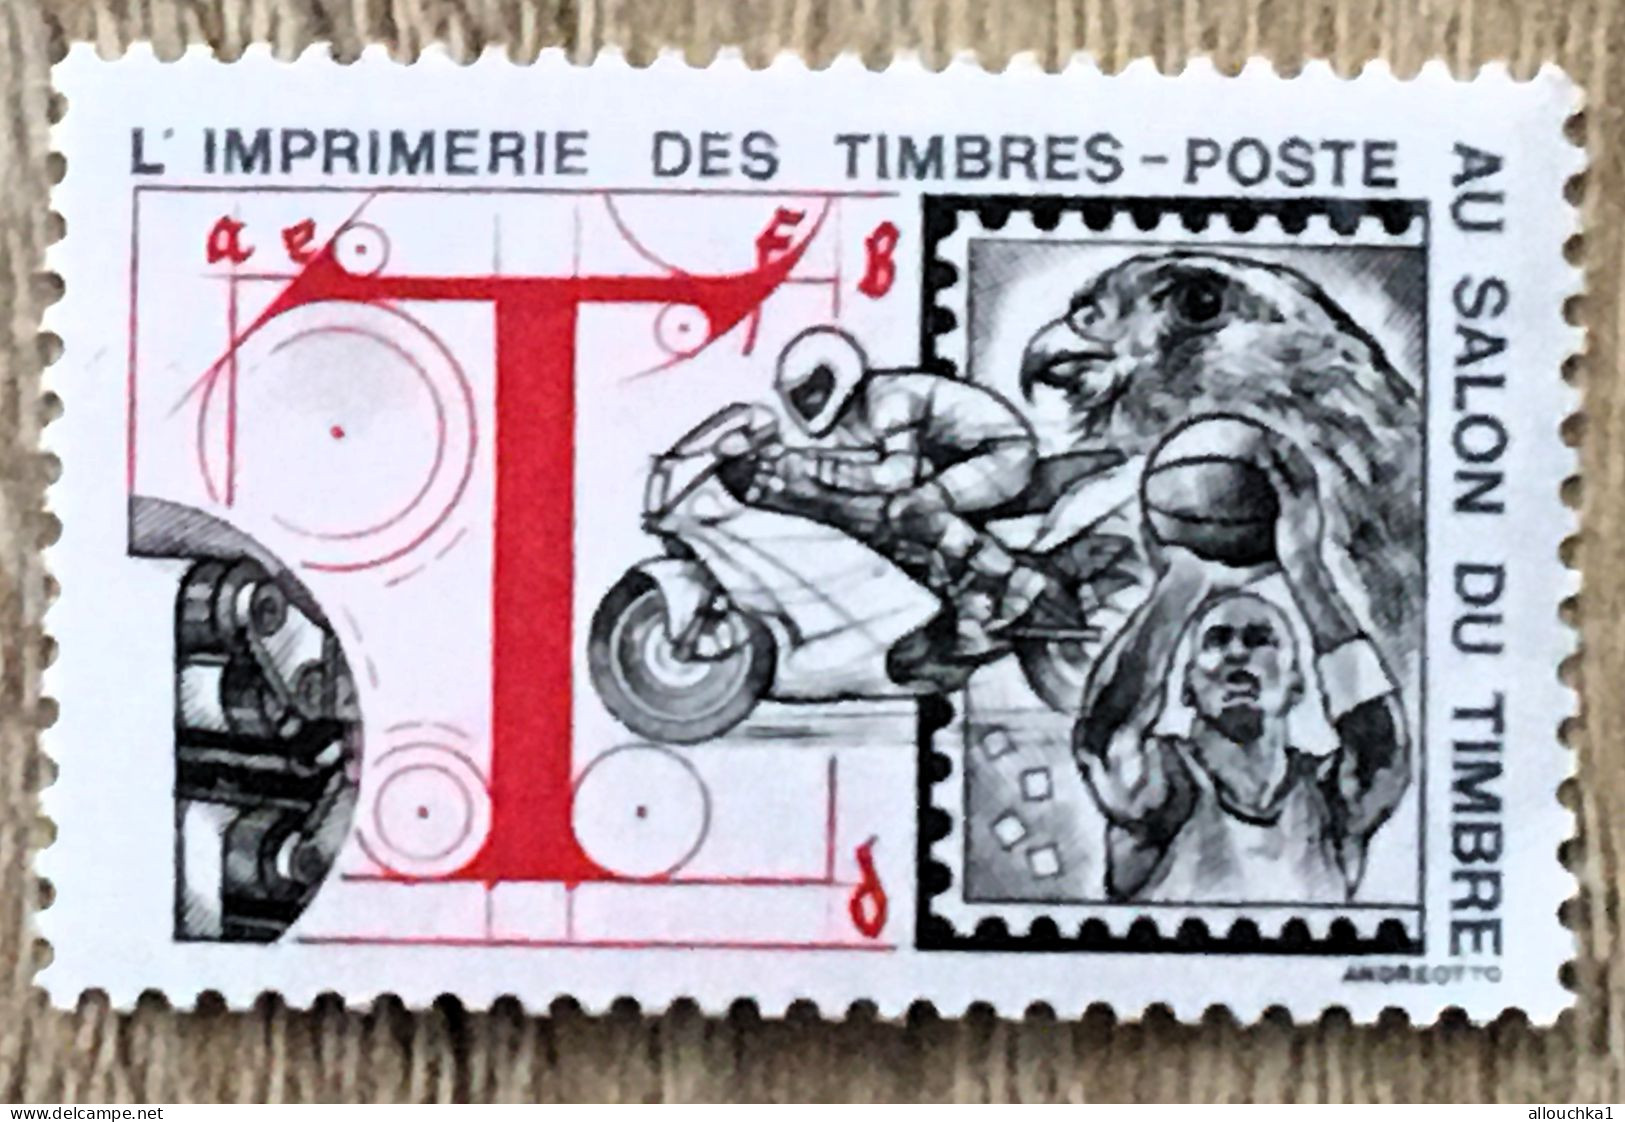 Imprimerie Timbres Poste Au Salon Du Timbre-2 Timbres Vignette**Expo-Philatélique-Erinnophilie-[E]Stamp-Sticker-Viñeta - Briefmarkenmessen